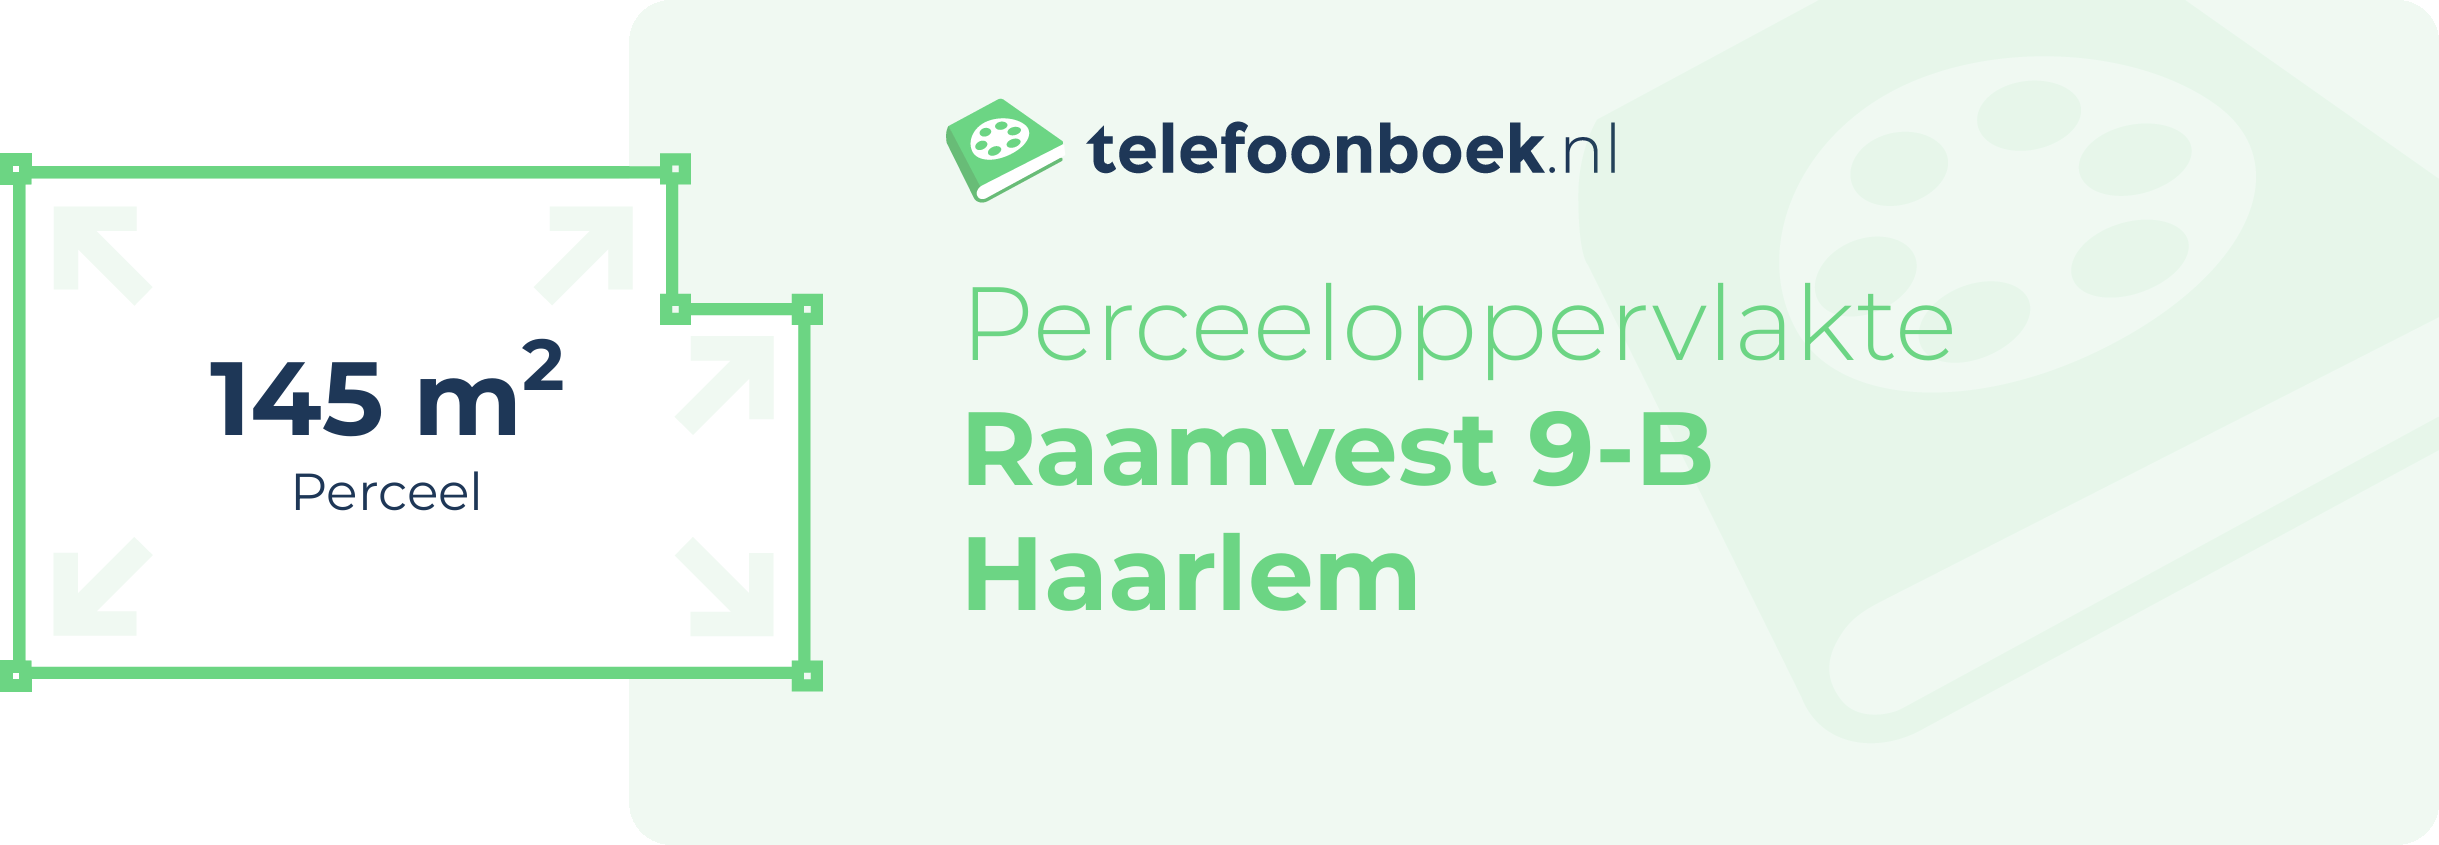 Perceeloppervlakte Raamvest 9-B Haarlem